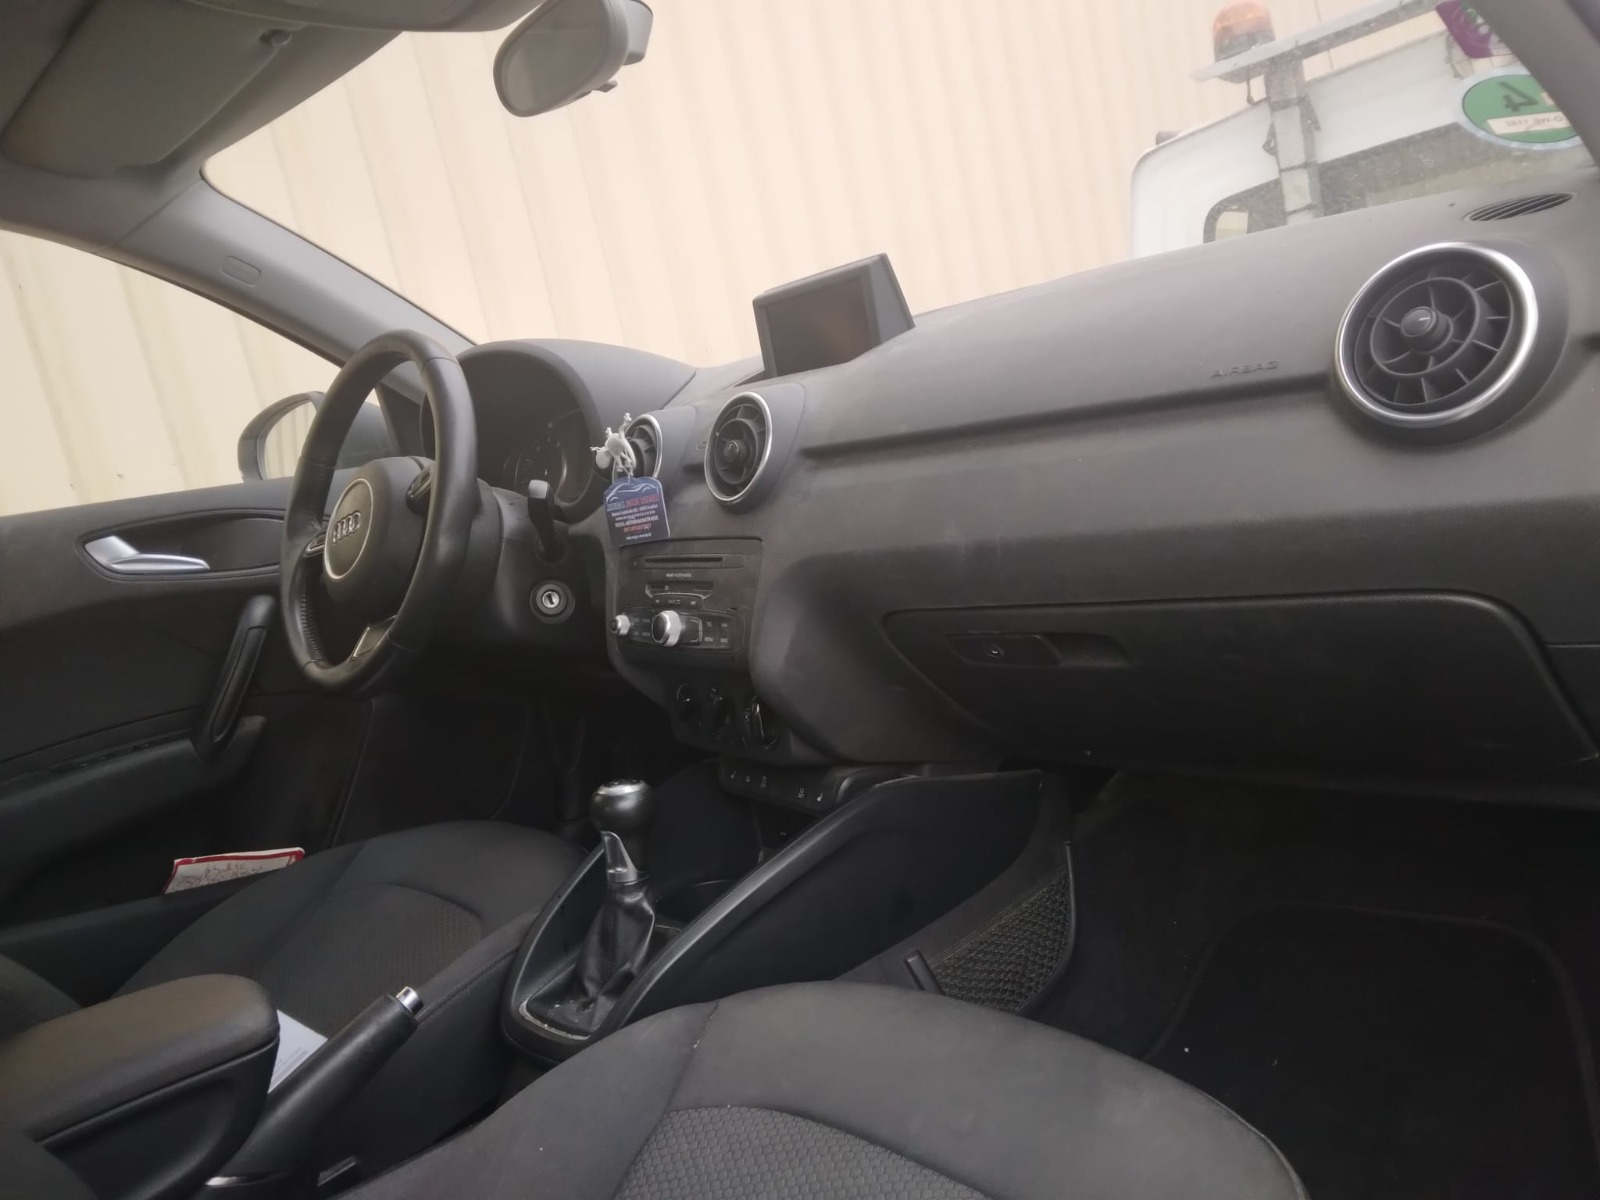 Juego de airbag Audi A1 2014 completo usado en perfectas condiciones